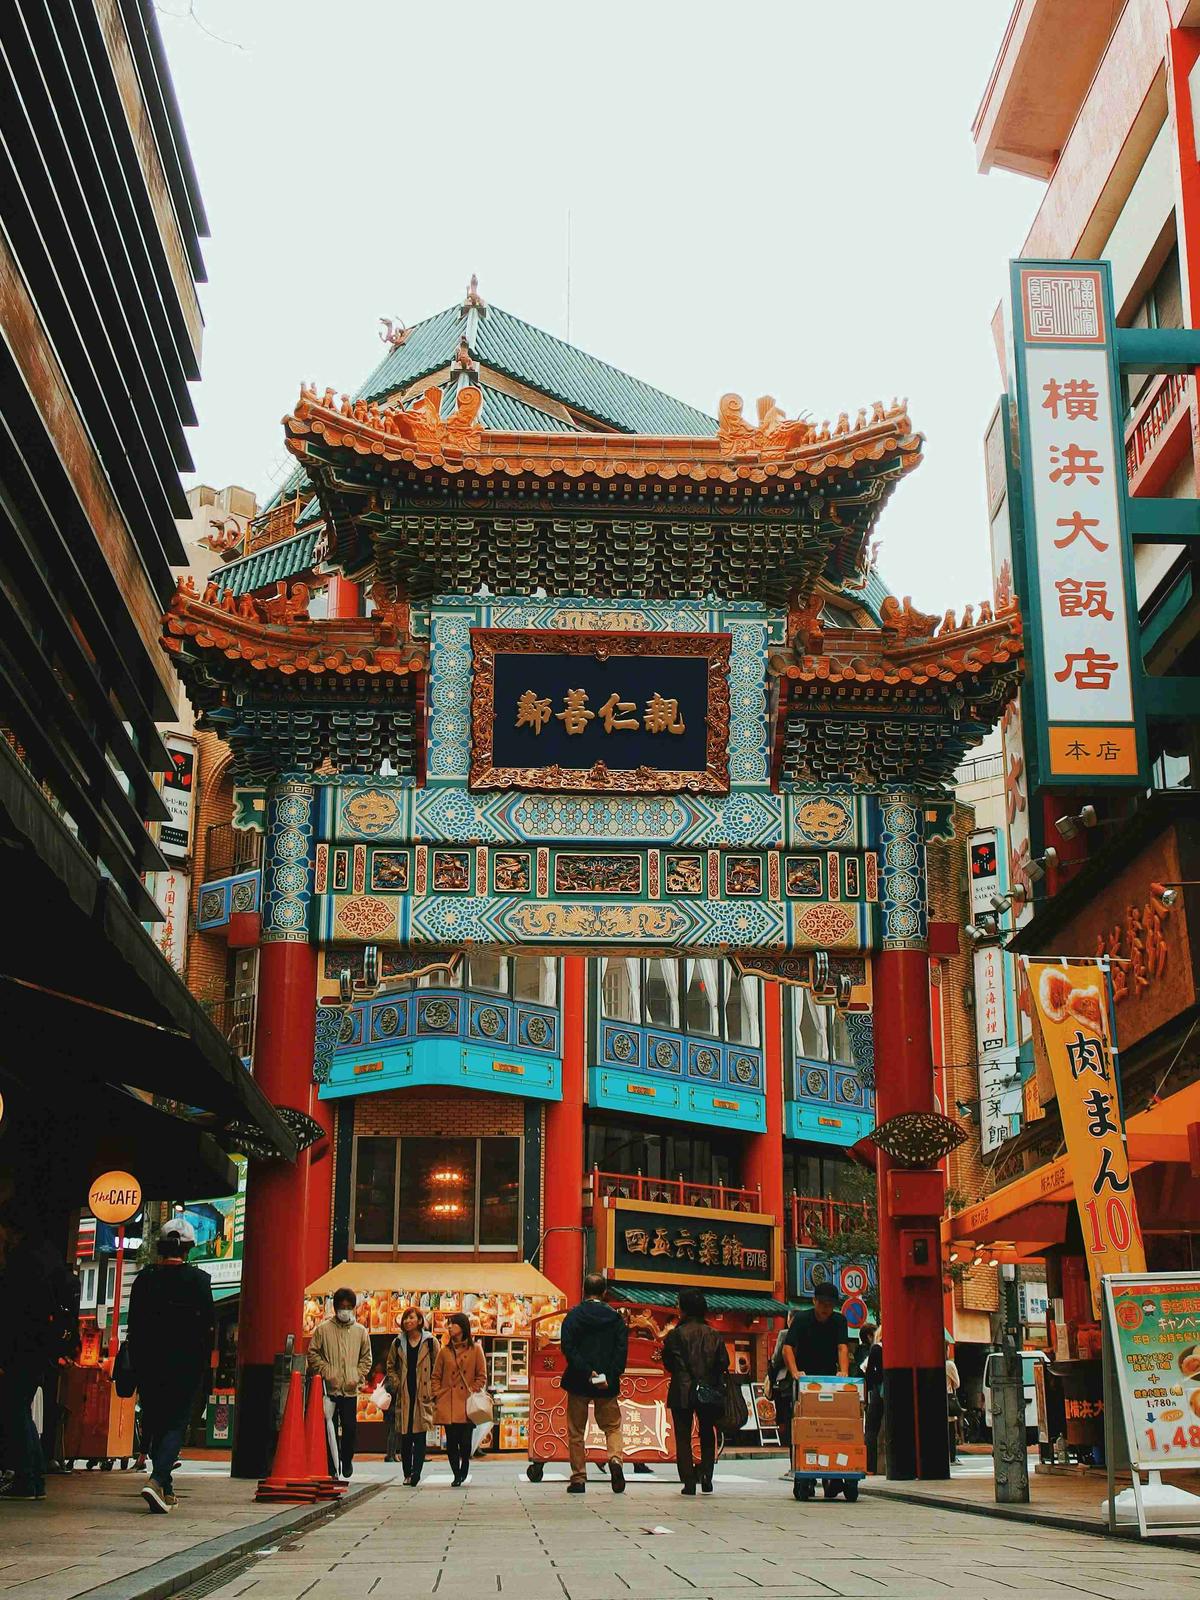 Tętniące życiem wejście do Chinatown z pieszymi